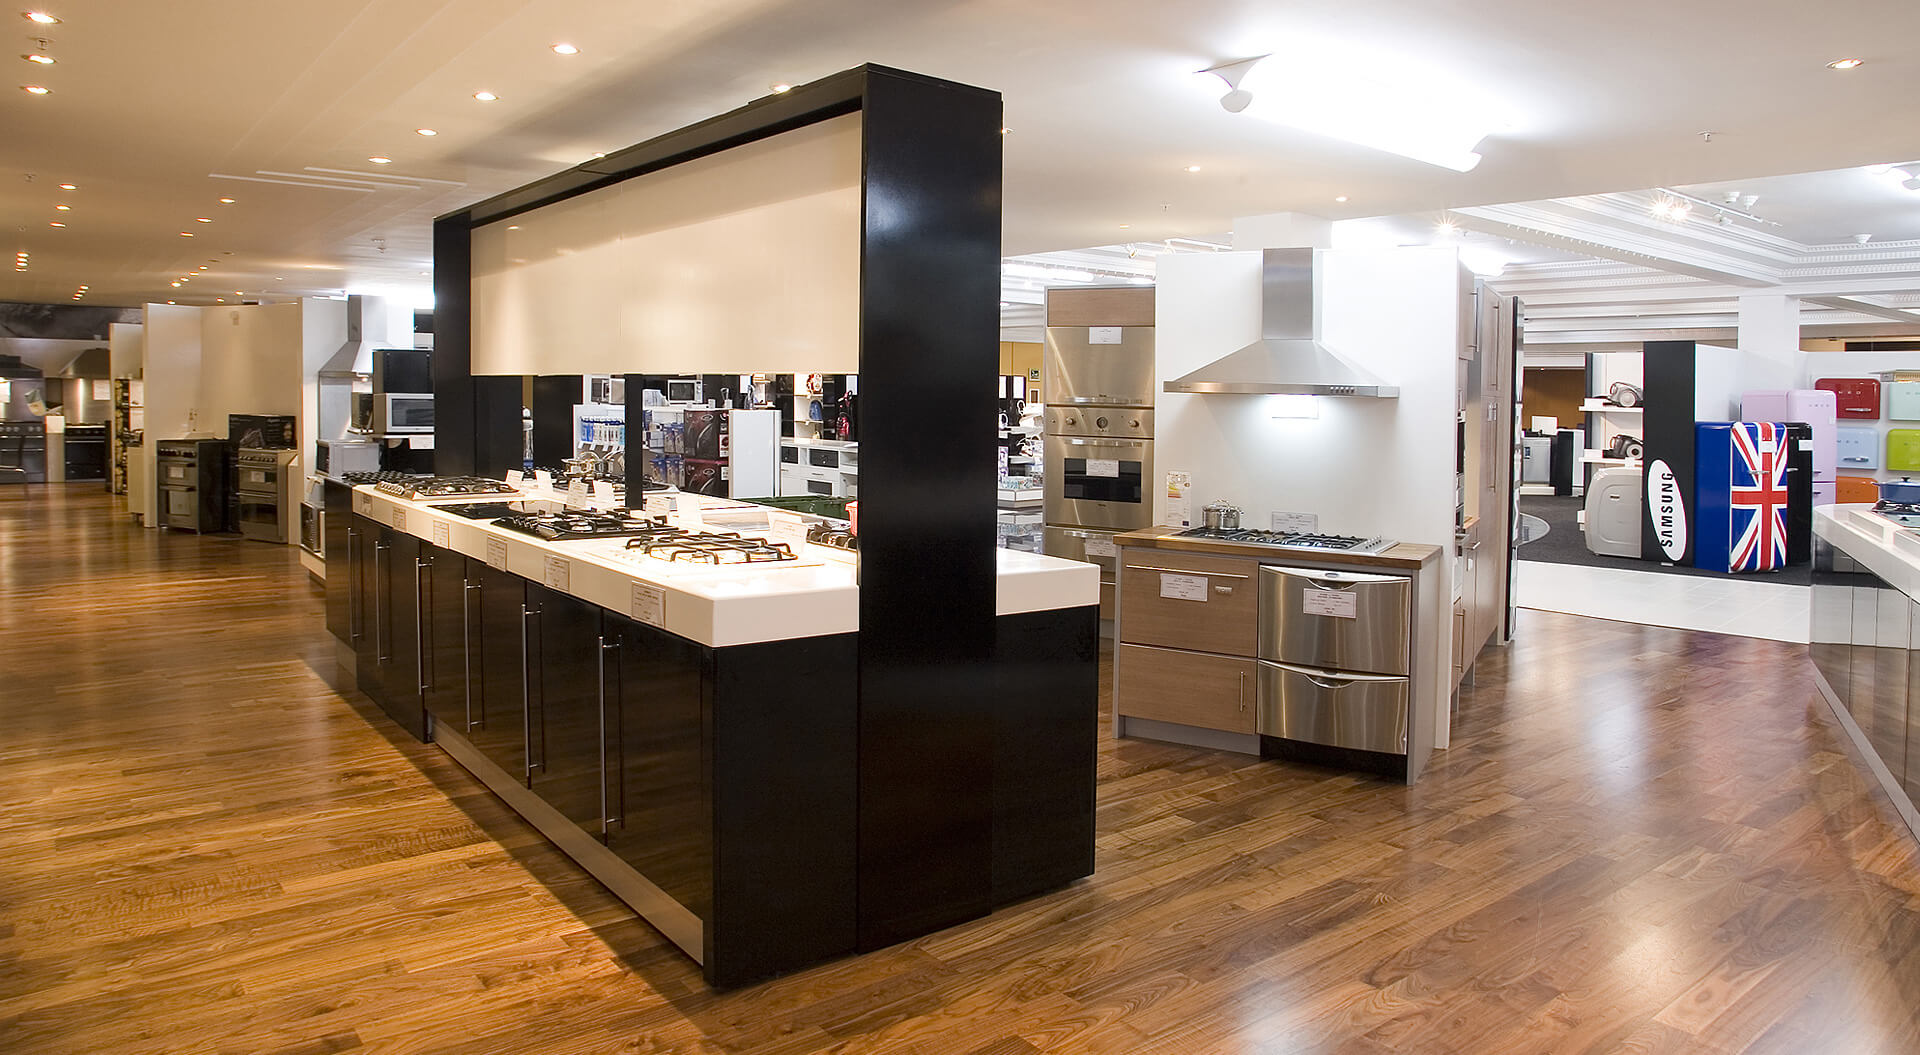 Harrods Department Store rebrand identity, interior design kitchen display